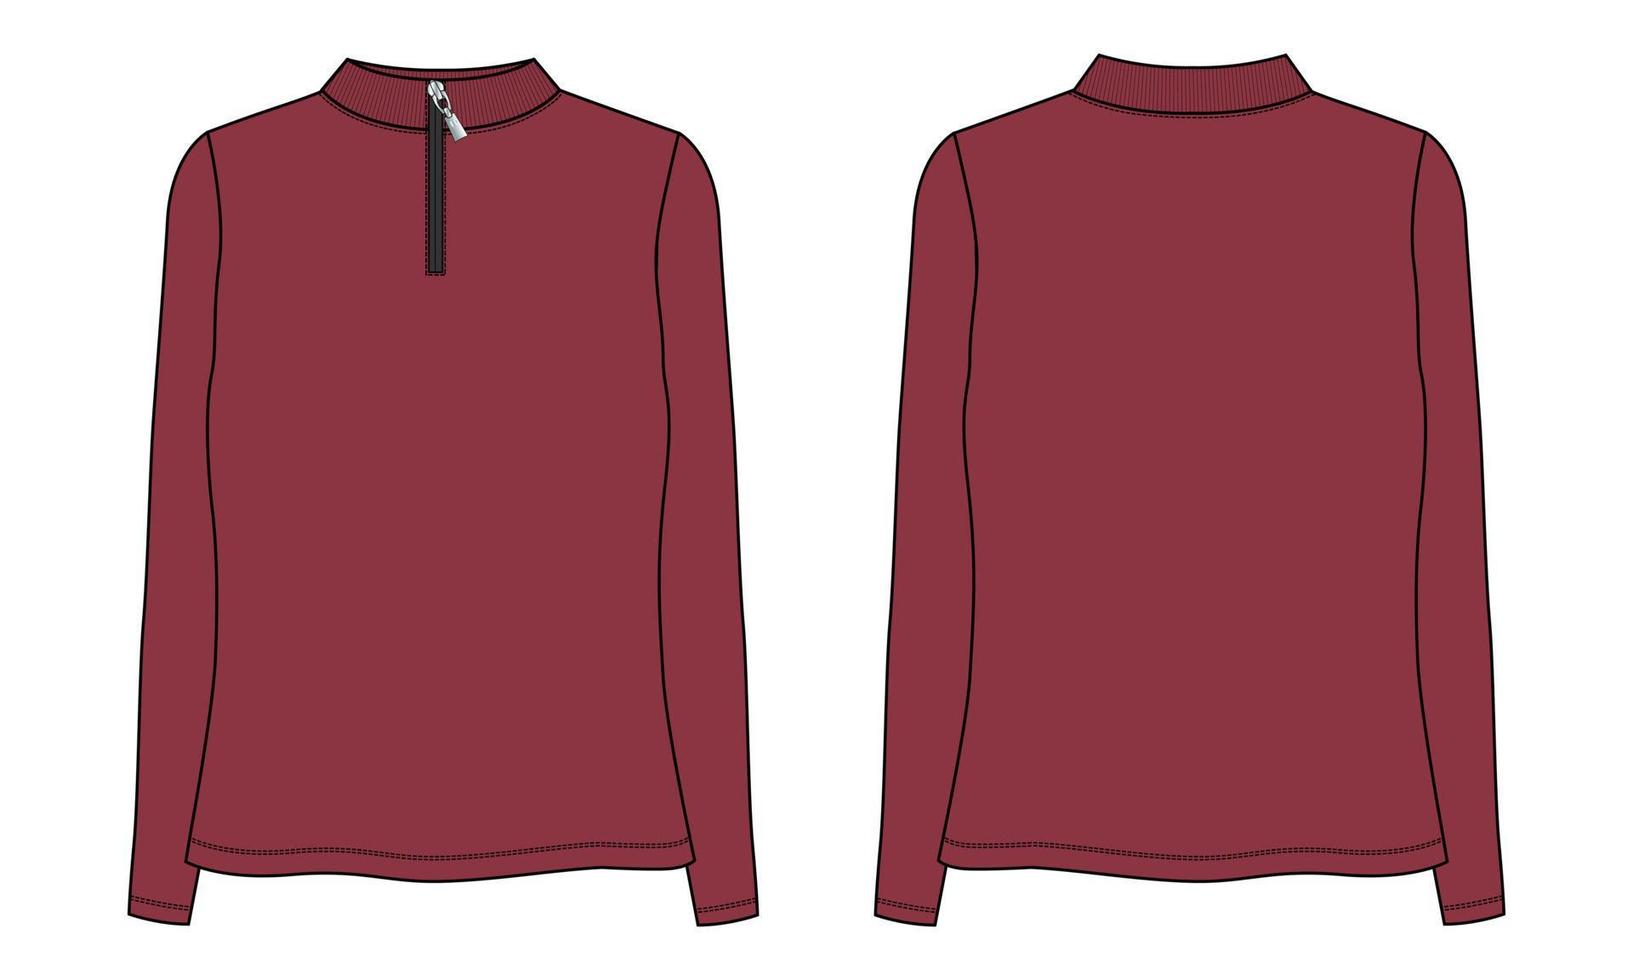 camisola de manga comprida moda esboço plano ilustração vetorial modelo de cor vermelha para senhoras vetor